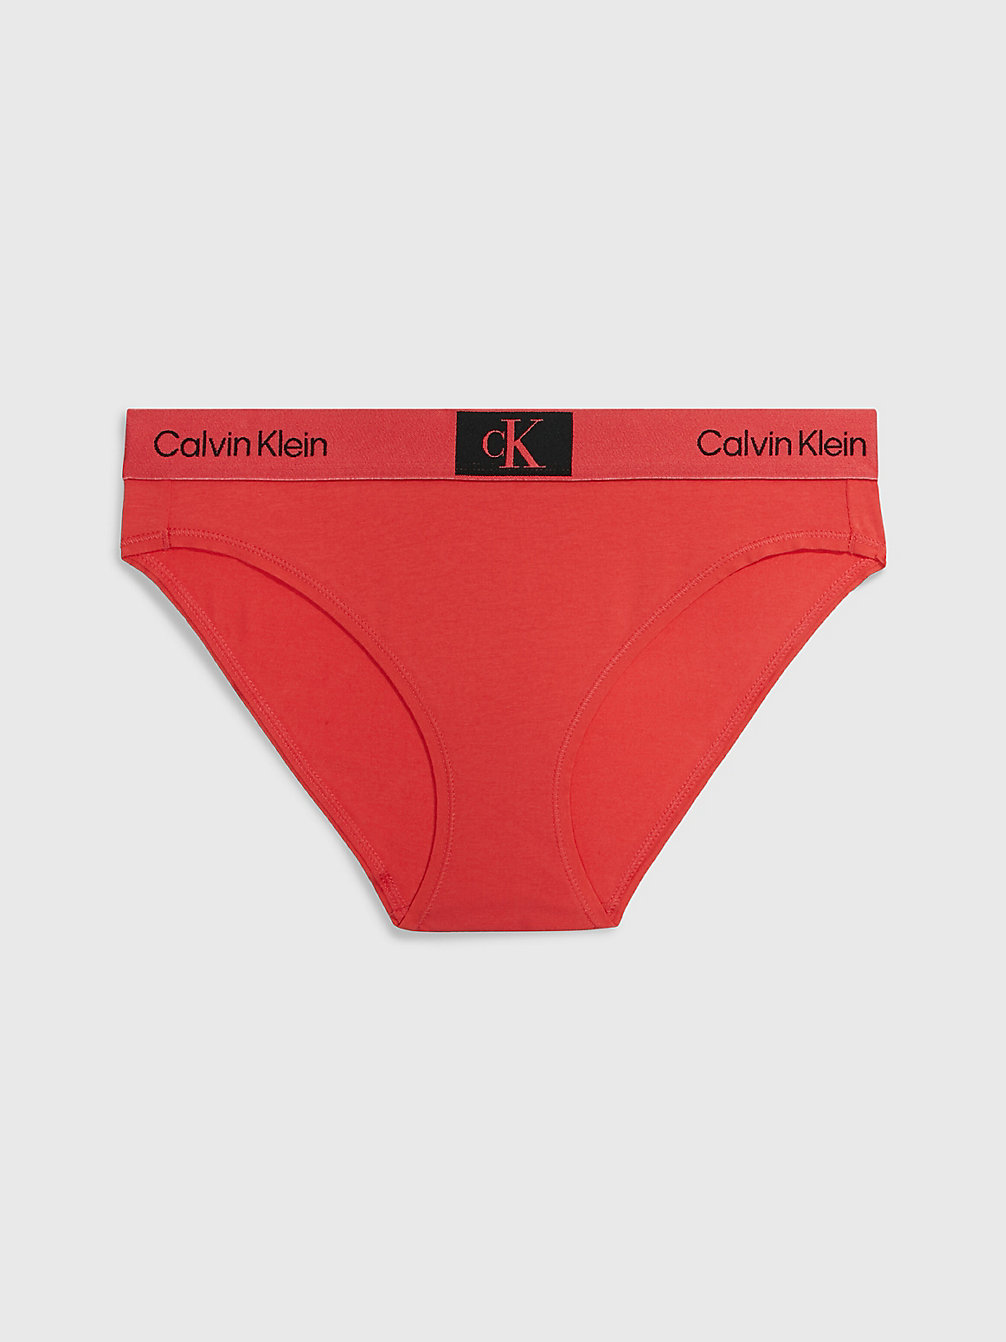 COOL MELON > Figi - Ck96 > undefined Kobiety - Calvin Klein